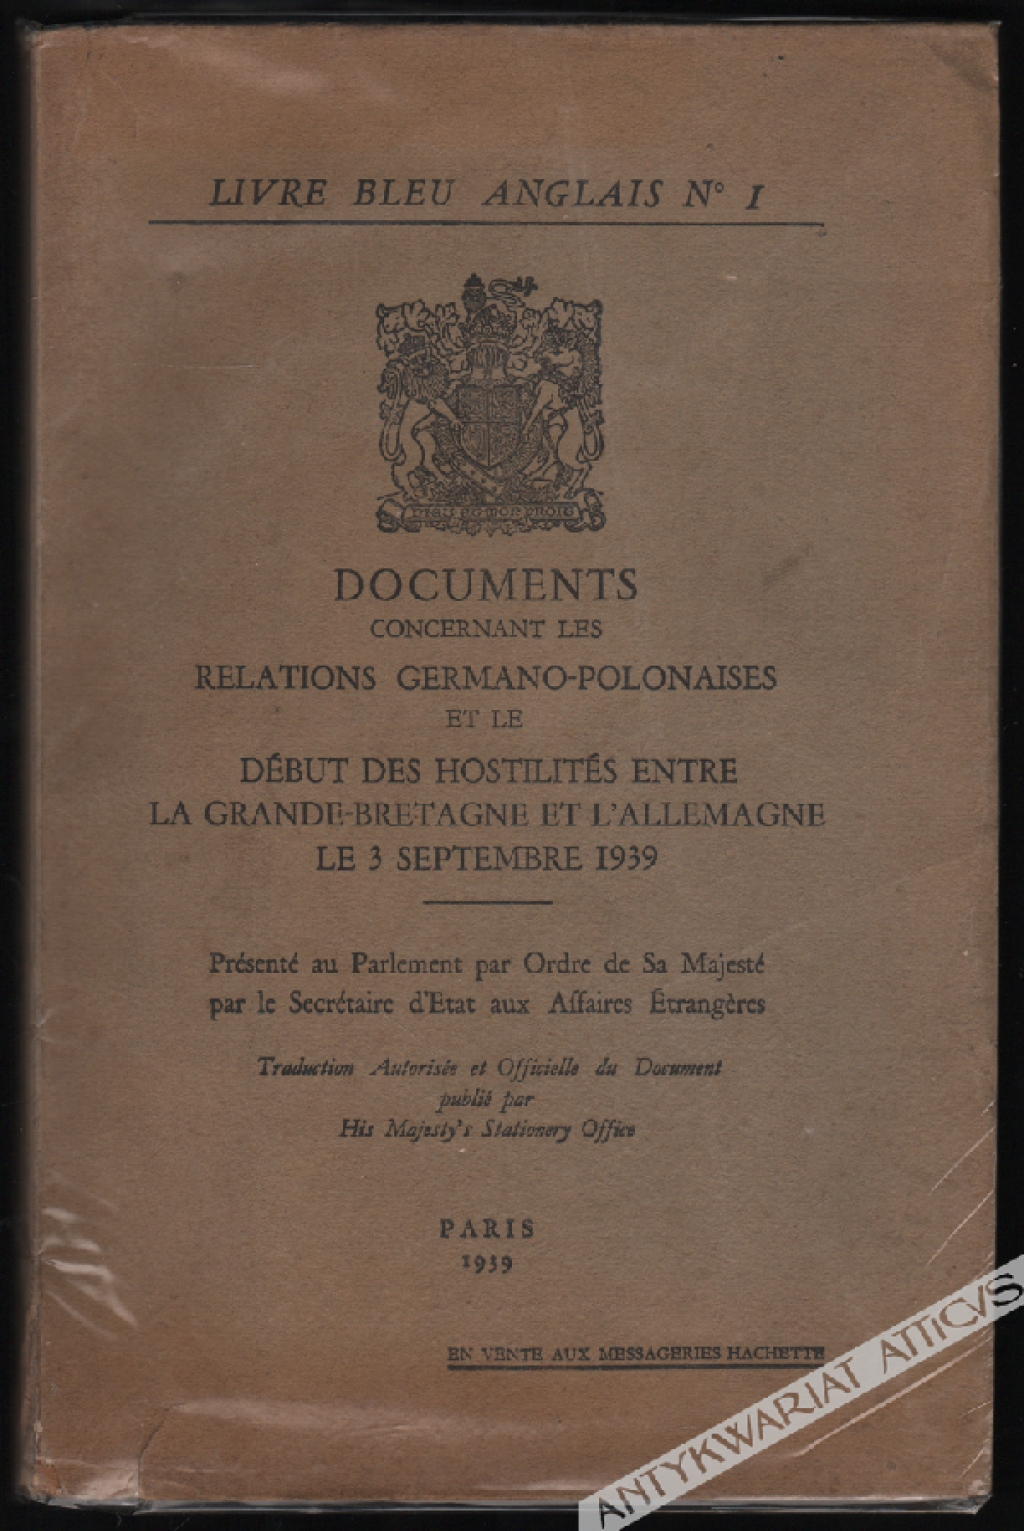 Documents concernant les relations Germano-Polonaises et le debut des hostilites entre la Grande-Bretagne et L'Allemagne le 3 septembre